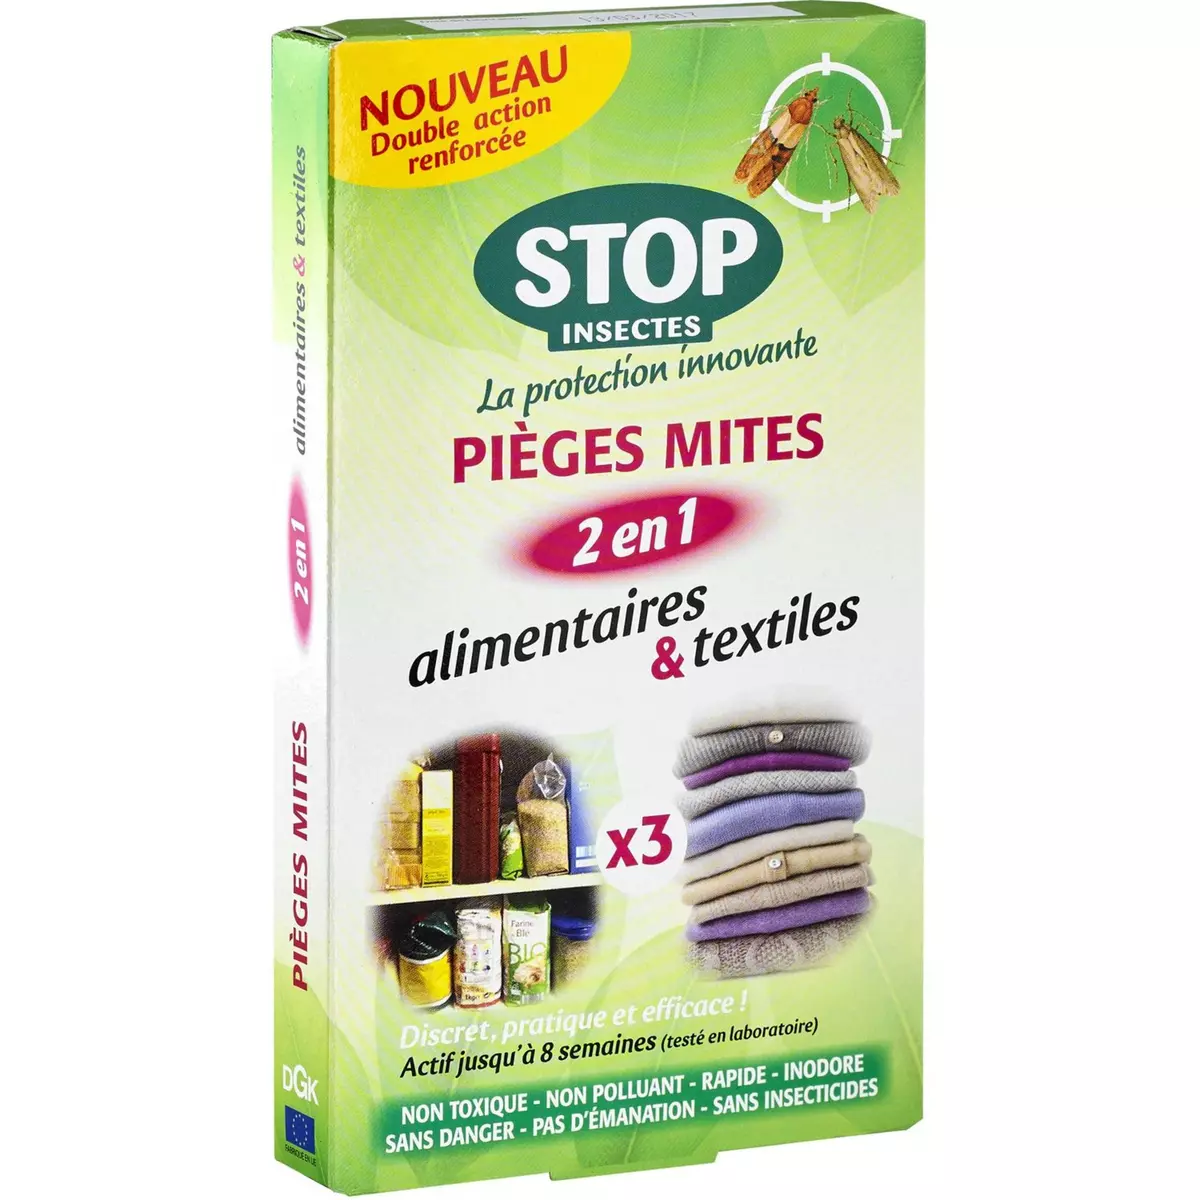 STOP INSECTES Pièges anti-mites alimentaires & textiles efficace 3x8semaines 3 pièges